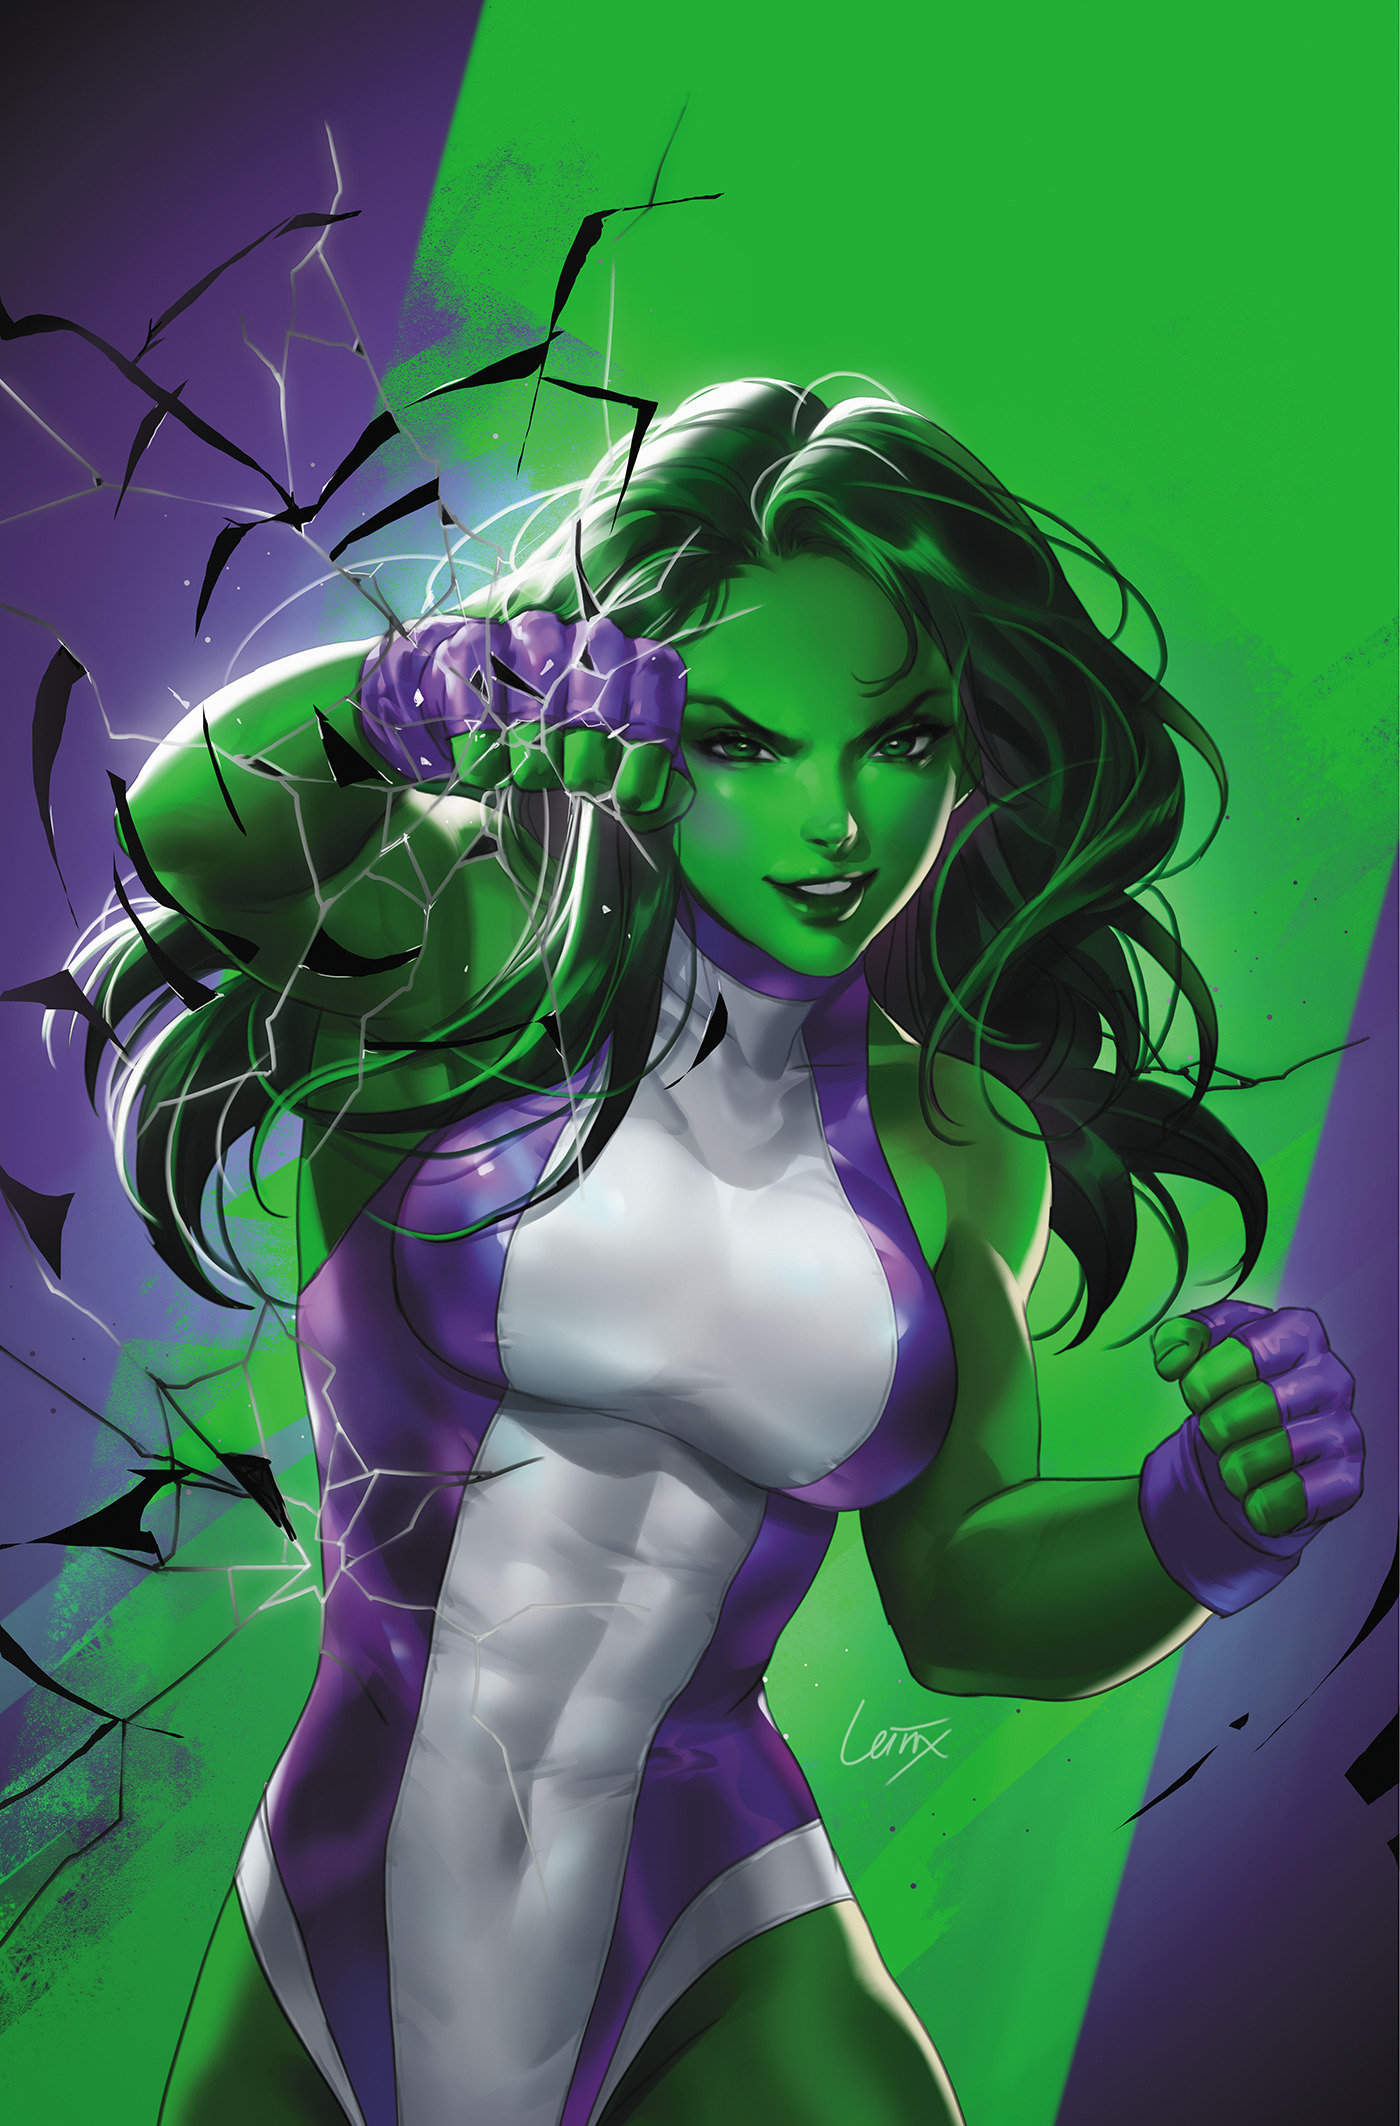 Sensational She-Hulk #1 Leirix She-Hulk Virgin Variant 1 for 50 Incentive